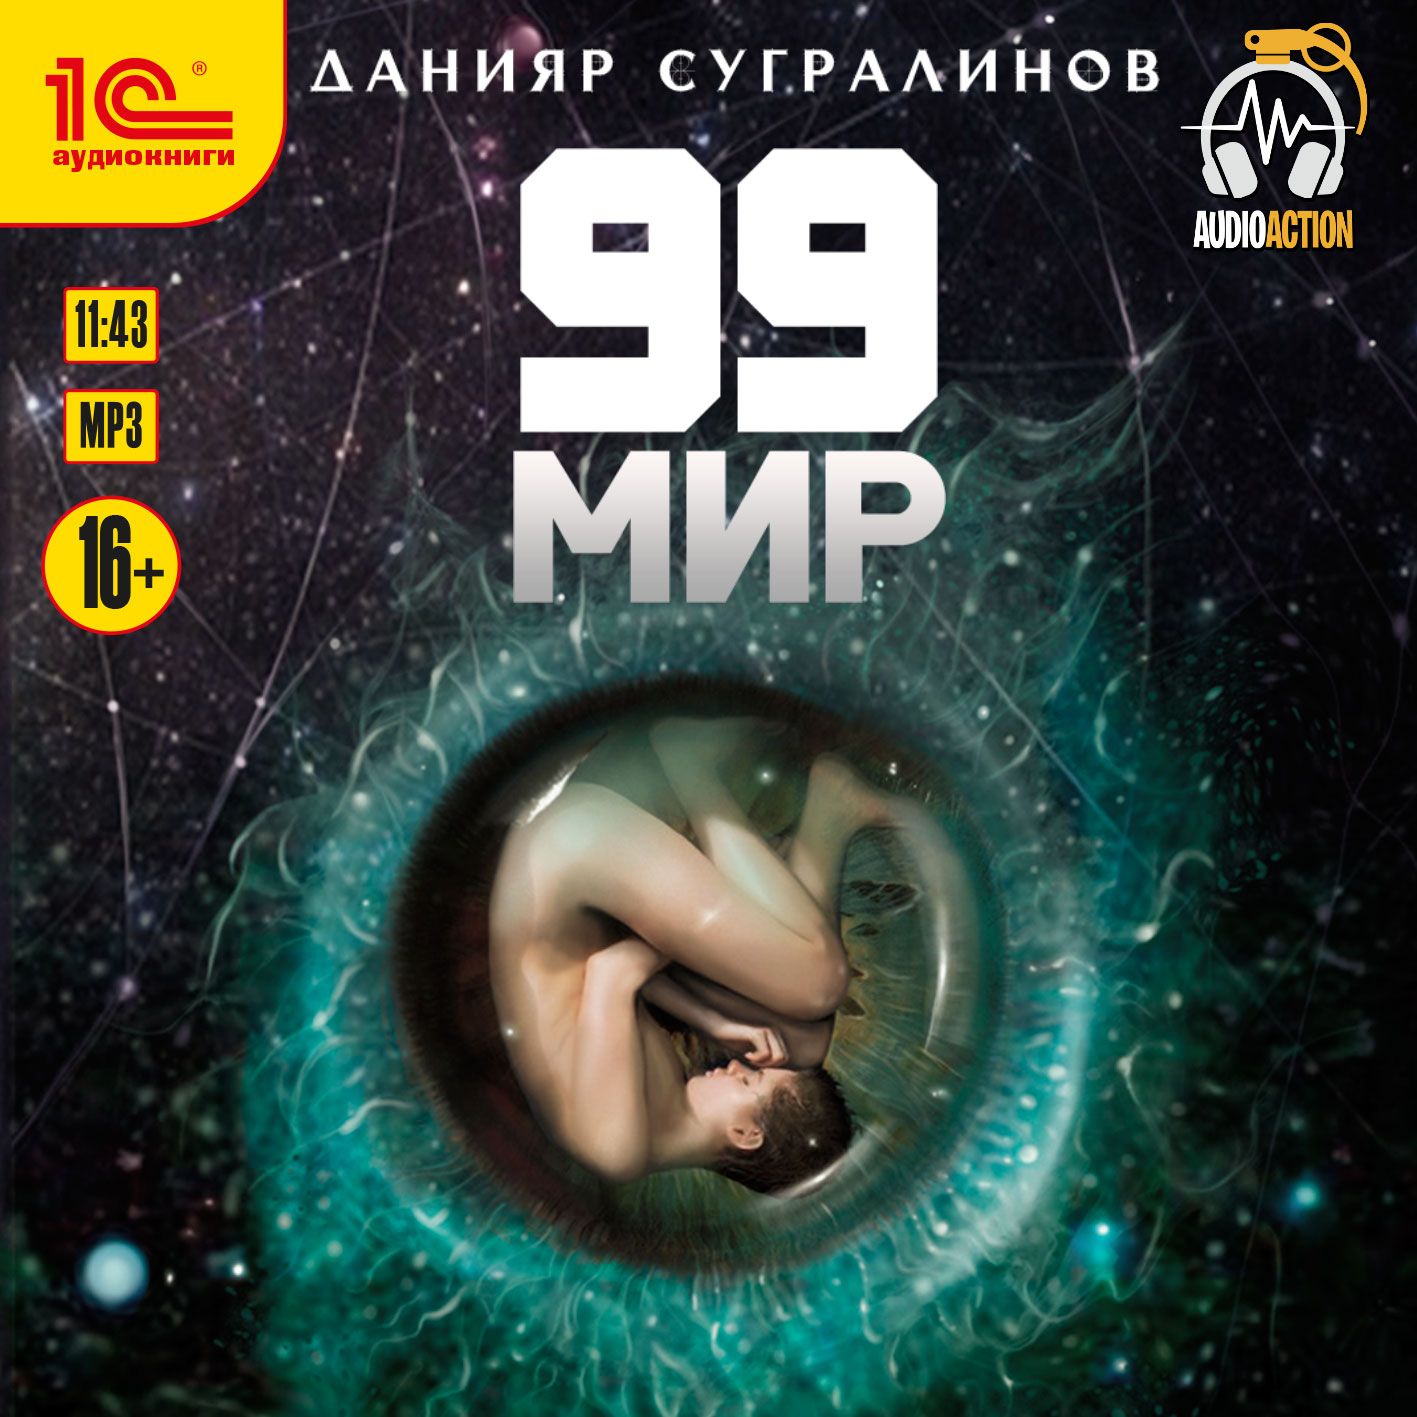 Скачать 99 мир - Данияр Сугралинов